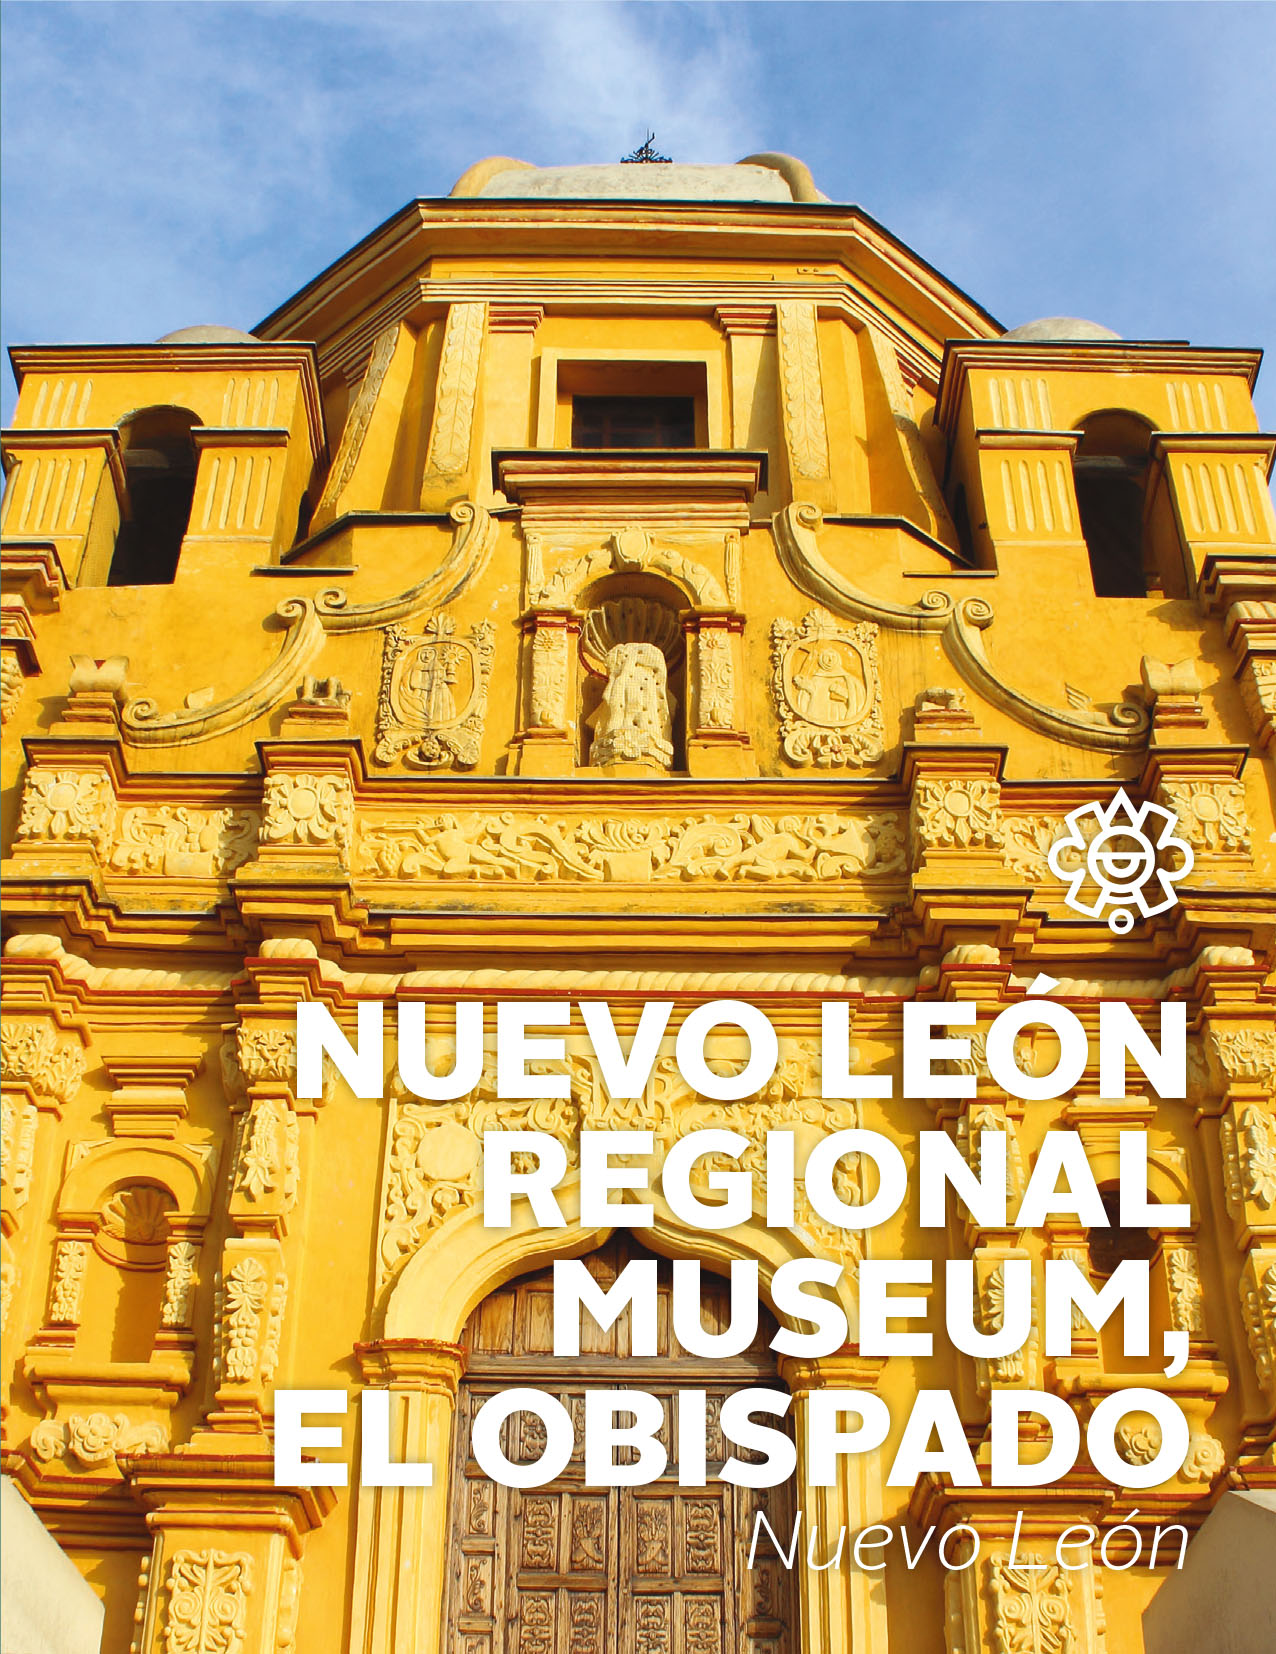 Nuevo León Regional Museum, El Obispado